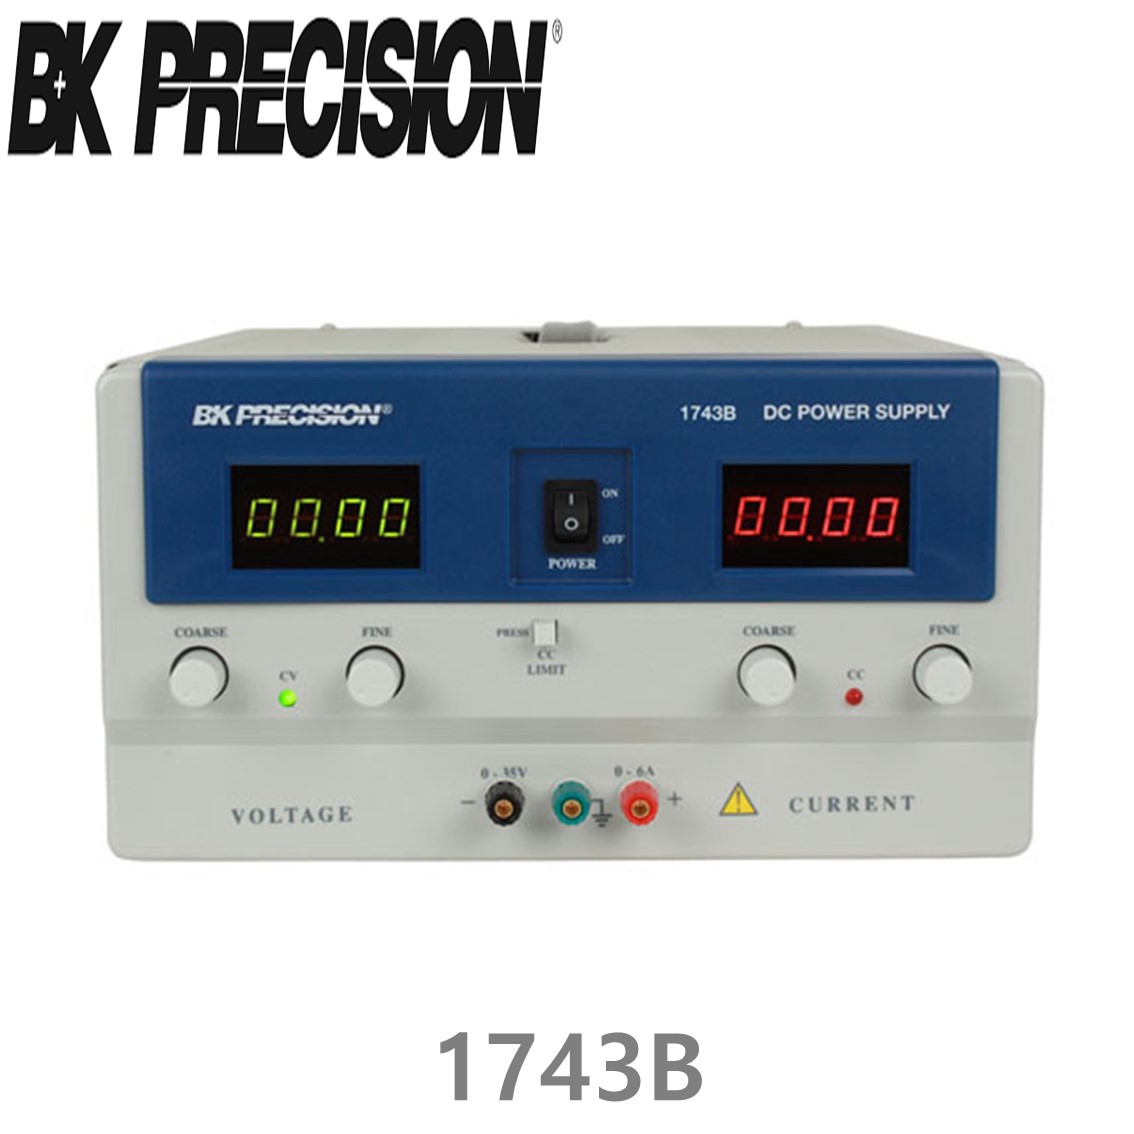 [ BK PRECISION ] BK 1743B, 35V/6A, DC Power Supply, 직류 전원공급기, B&K 1743B